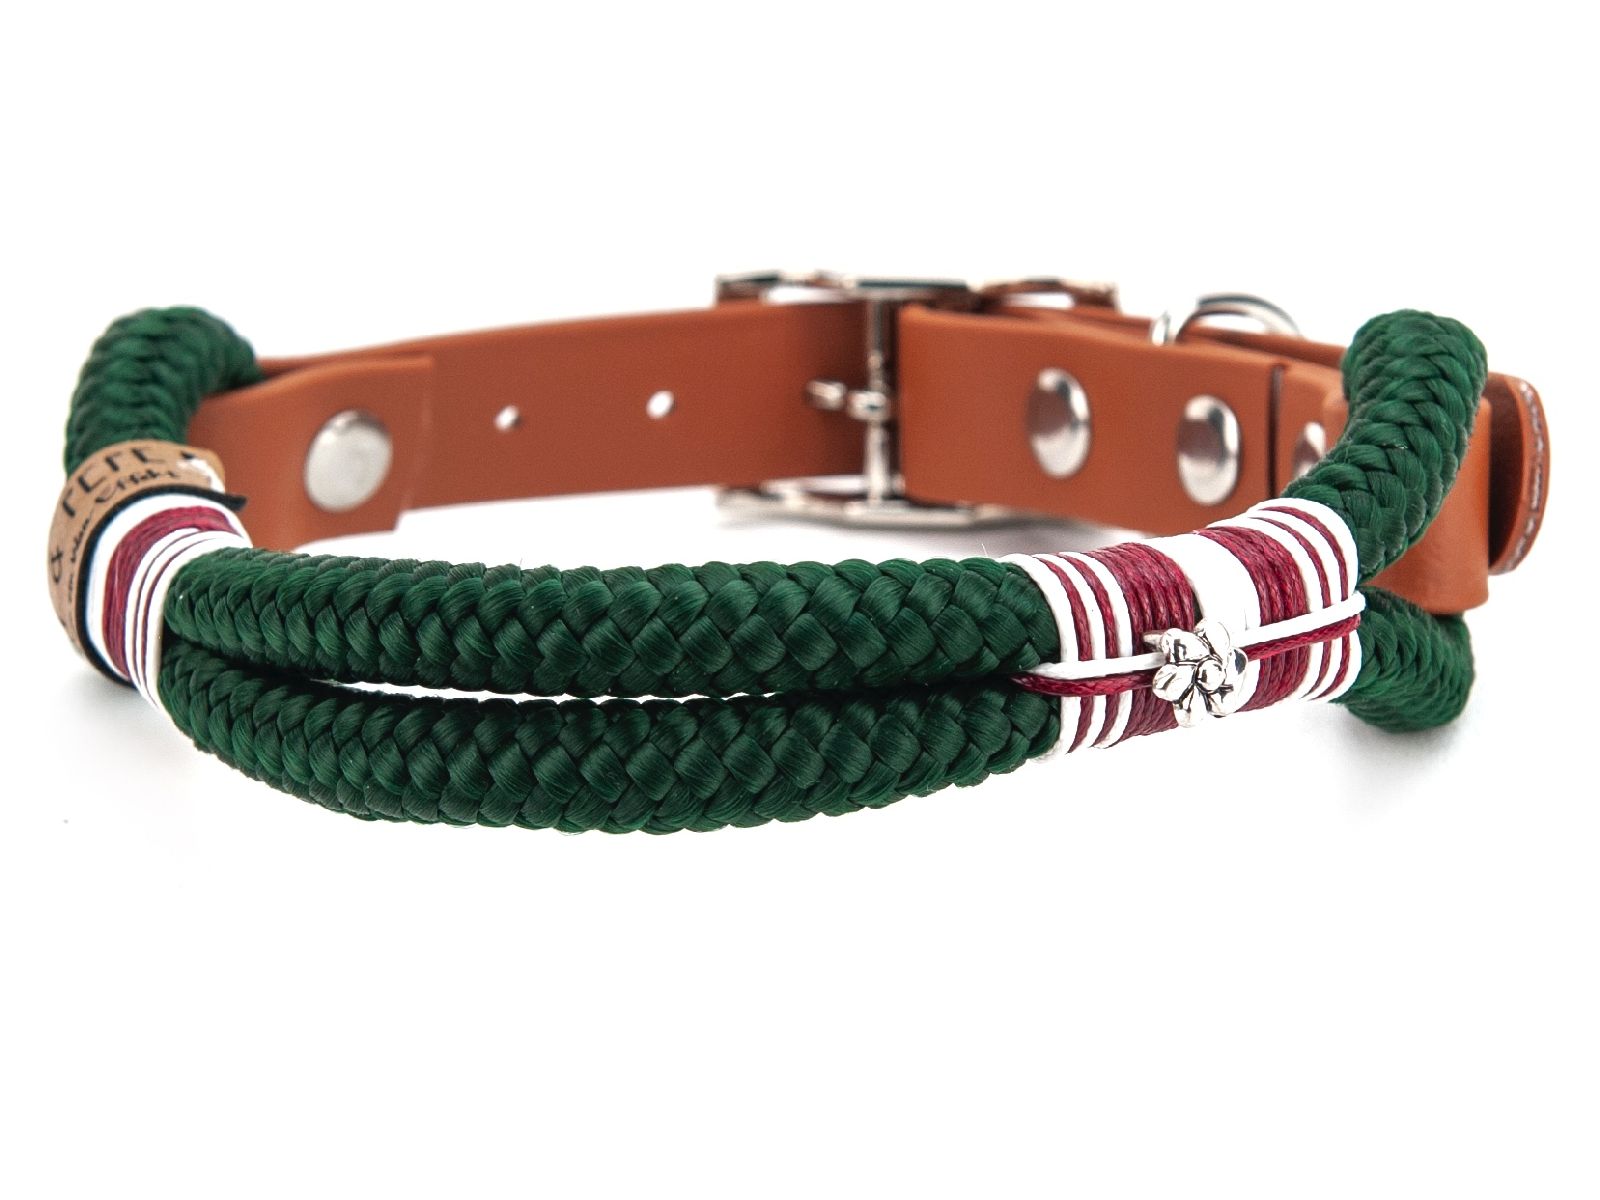 Halsband Hundehalsband Tauhalsband ohne Perlen Vegan Handarbeit abwaschbar verstellbar wasserabweisend robust Gassi gehen silber dunkelgrün